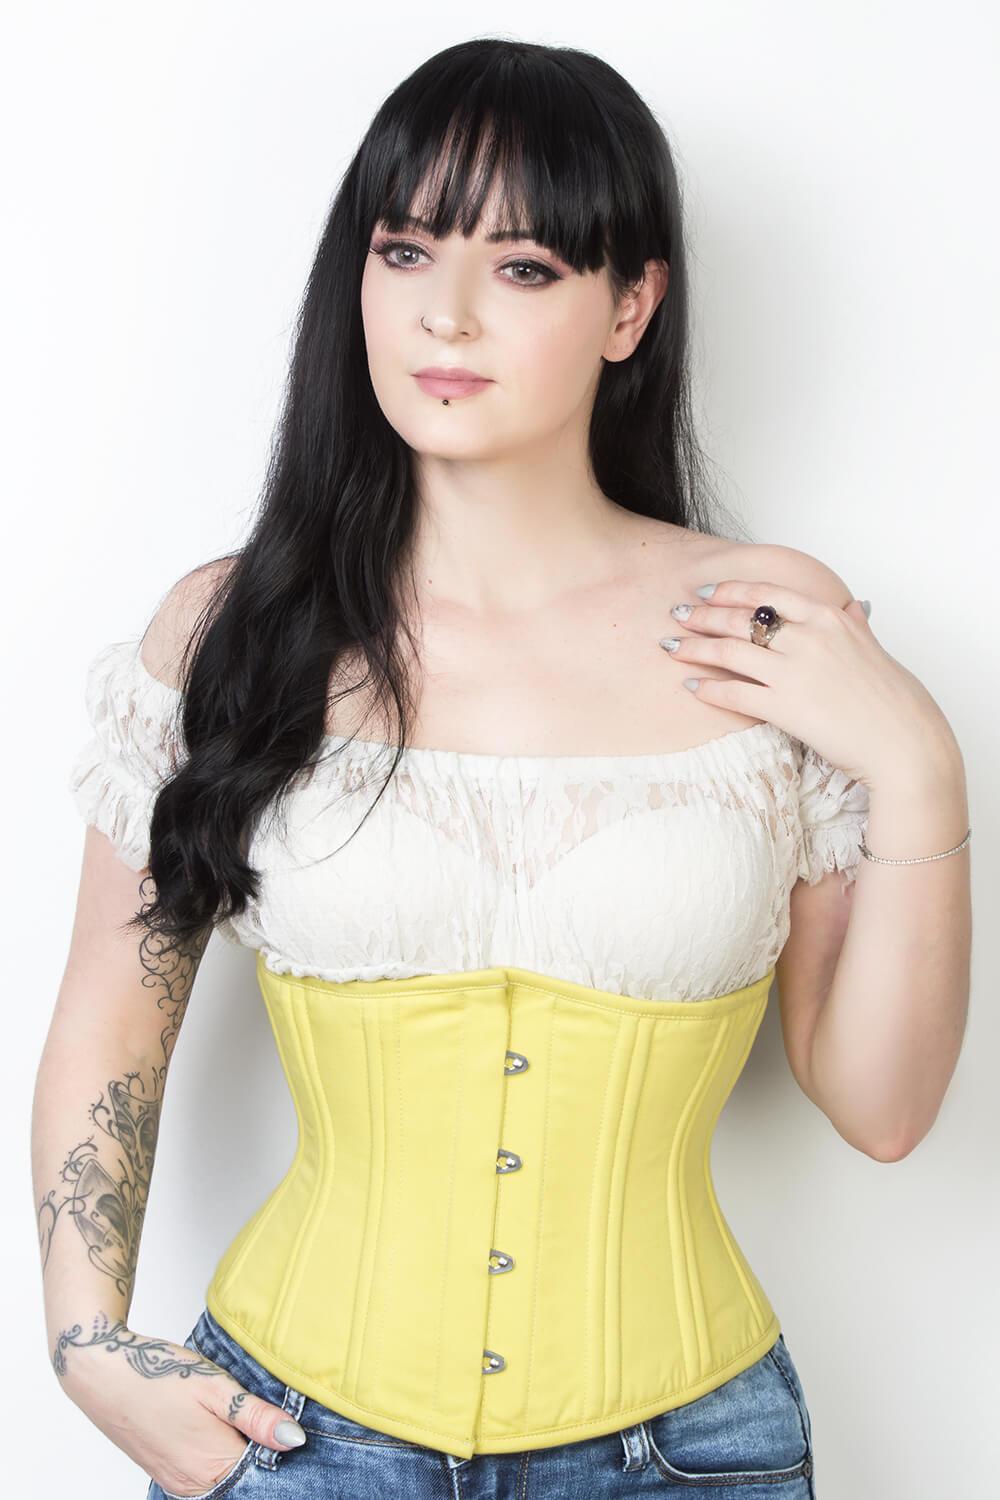 https://www.corsetdeal.com/cdn/shop/products/EL-337_F_Elyzza_London_Corset_Corsetdeal_Bespoke_Corset_waist_training_corset_ba61383d-ee36-4298-847e-9920f676e113.jpg?v=1555396961